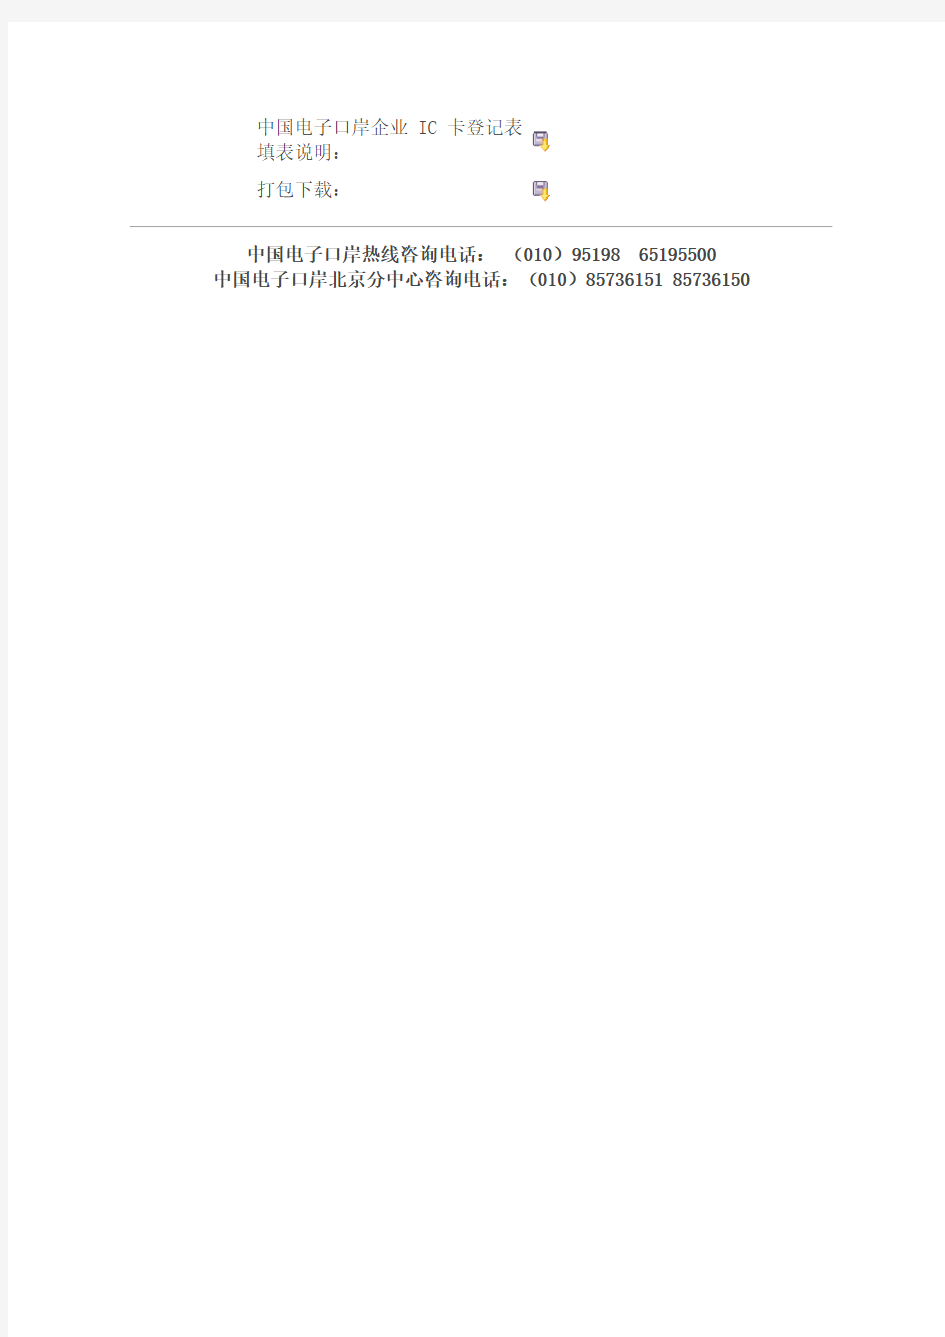 北京电子口岸企业IC卡办理流程